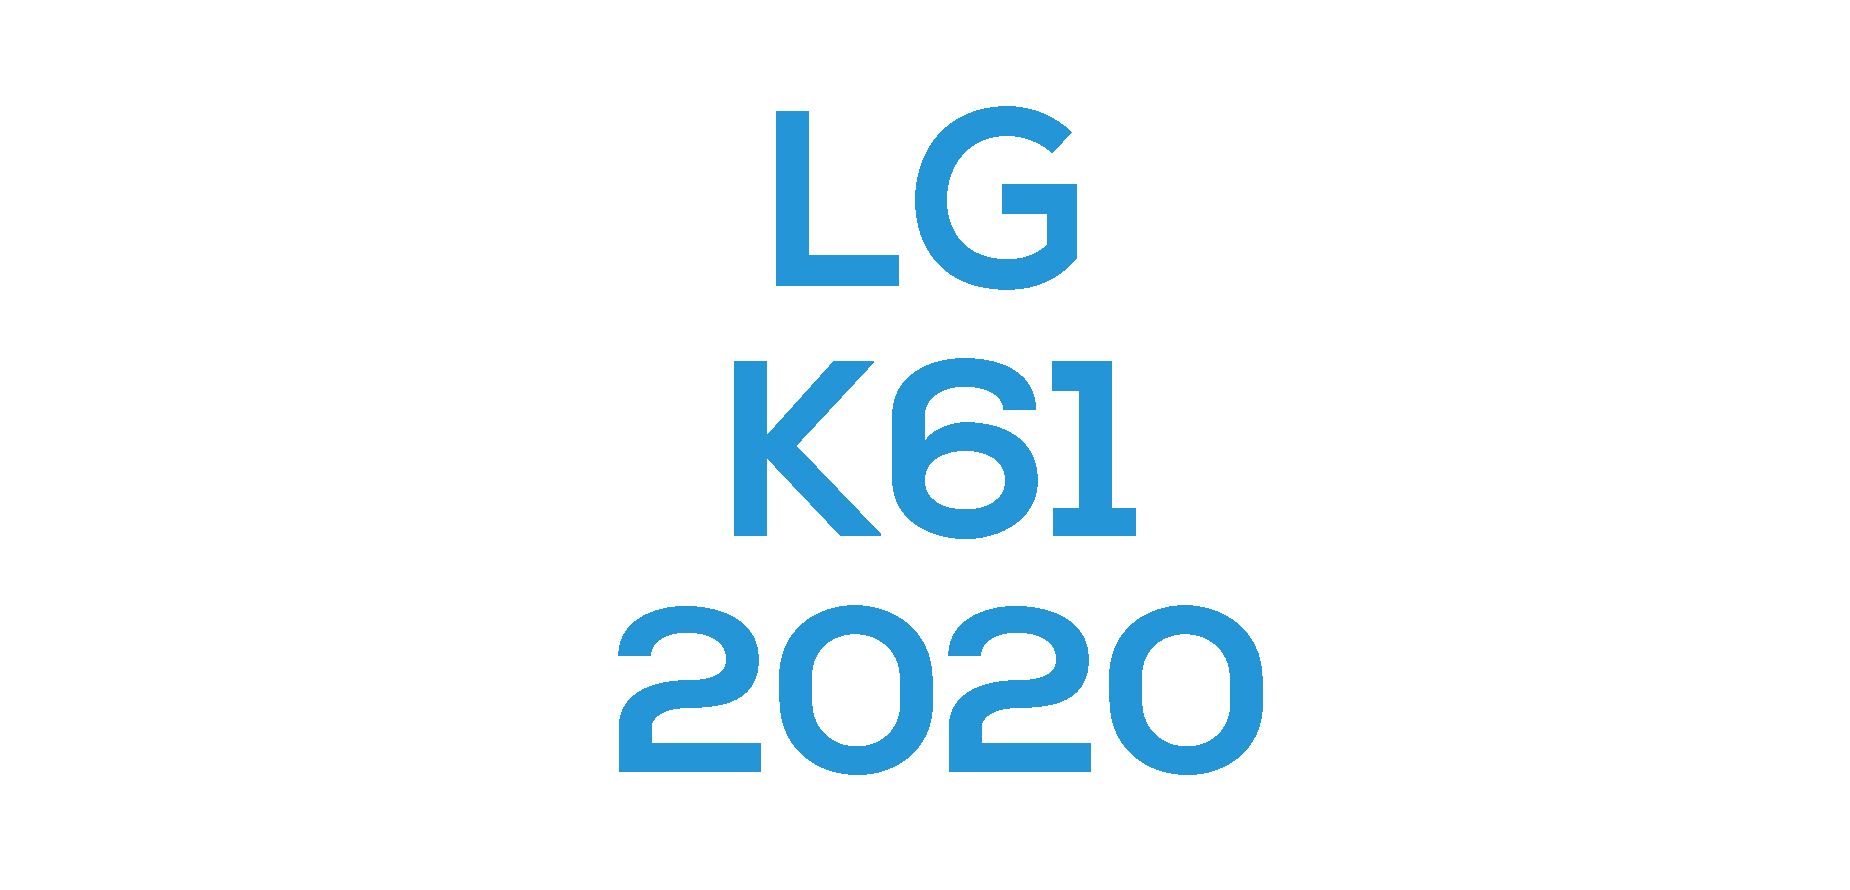 LG K61 (2020)